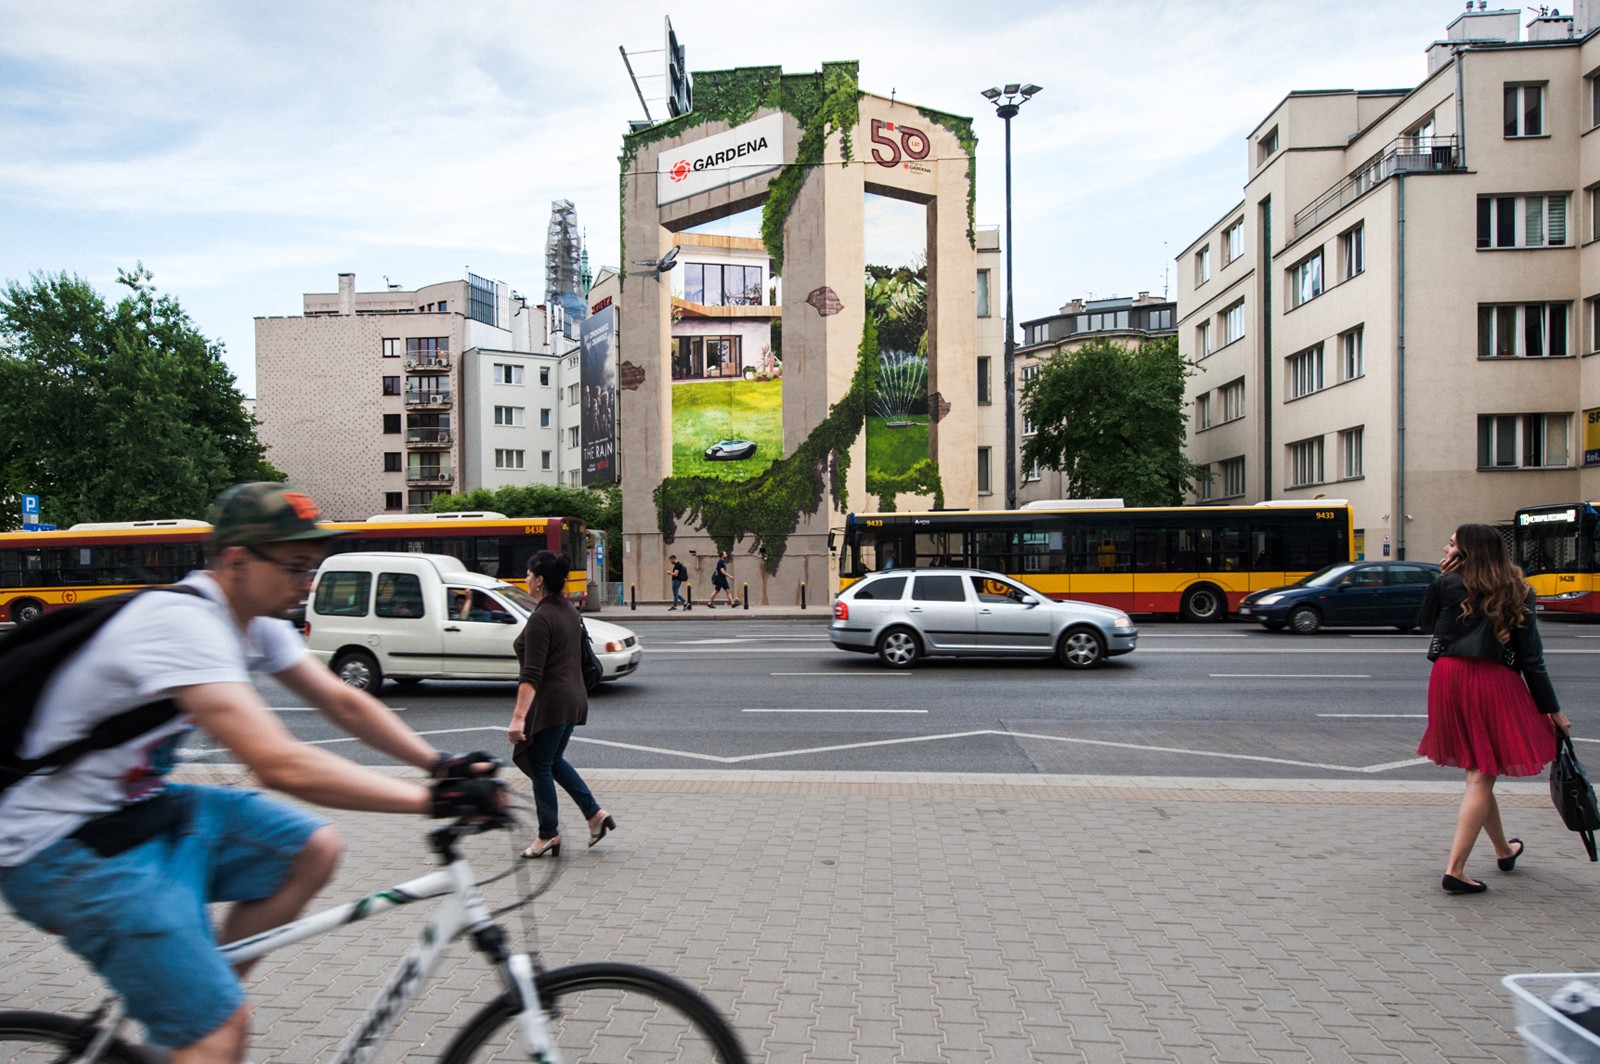 Mural reklamowy na zlecenie Gardena Jaworzyńska 8 Warszawa | Gardena | Portfolio